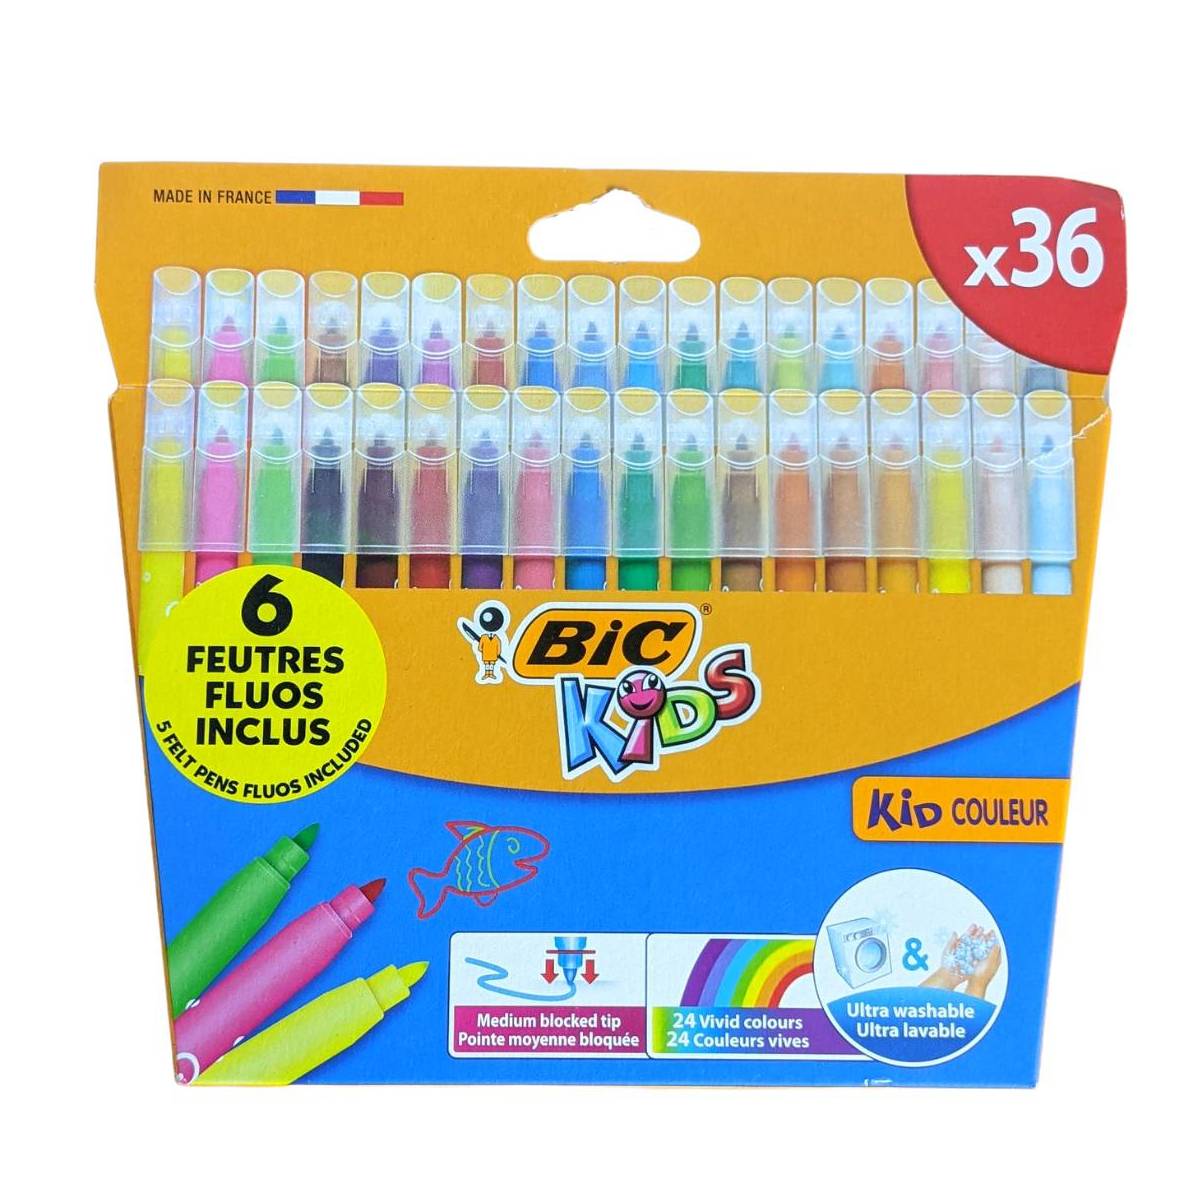 Bic Kids 36 farbige Marker + 6 fluoreszierende Marker